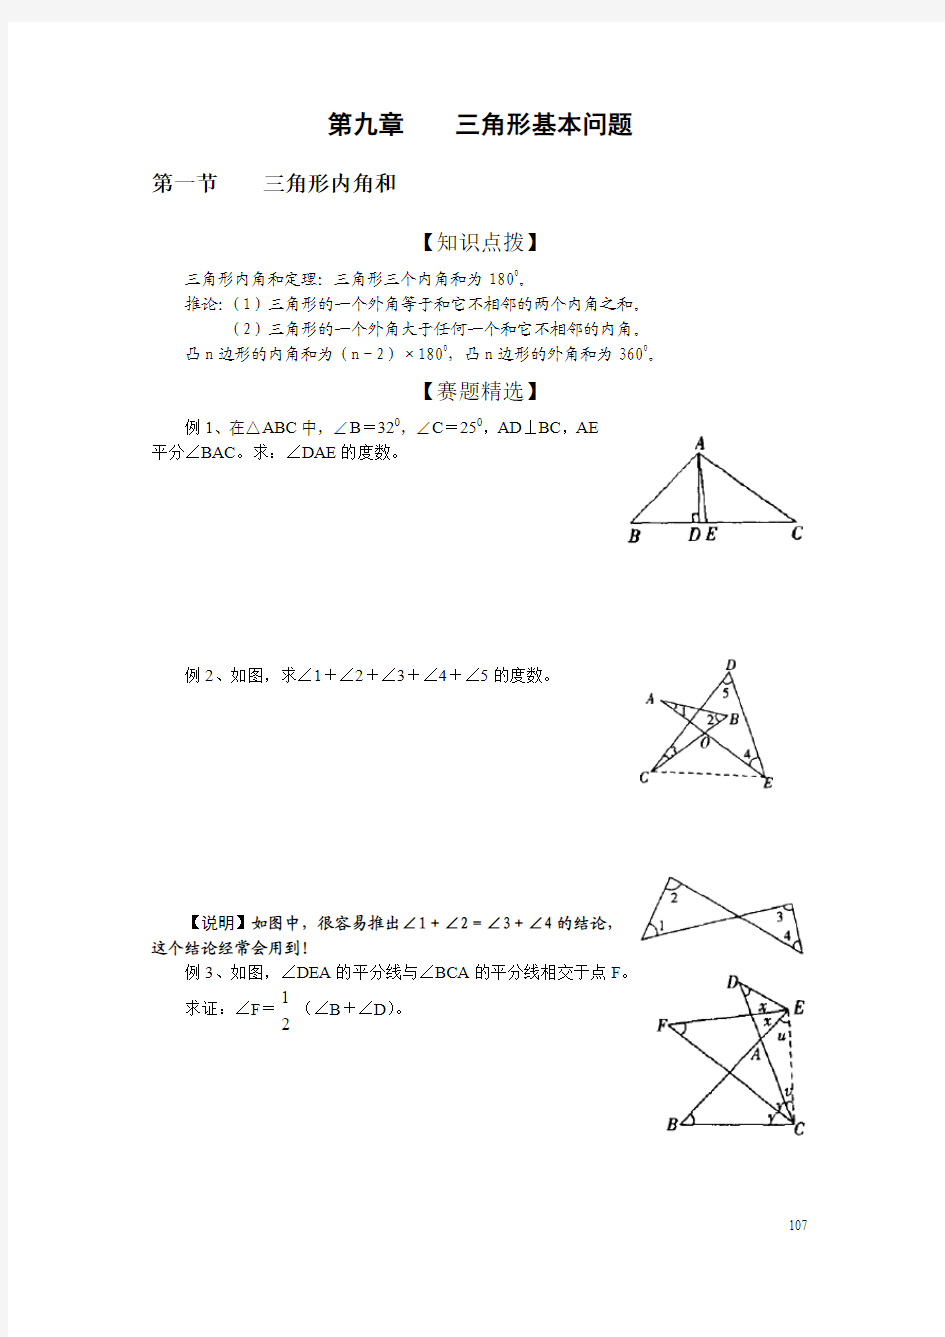 初中数学奥林匹克竞赛解题方法大全(配PDF版)-第09章-三角形基本问题